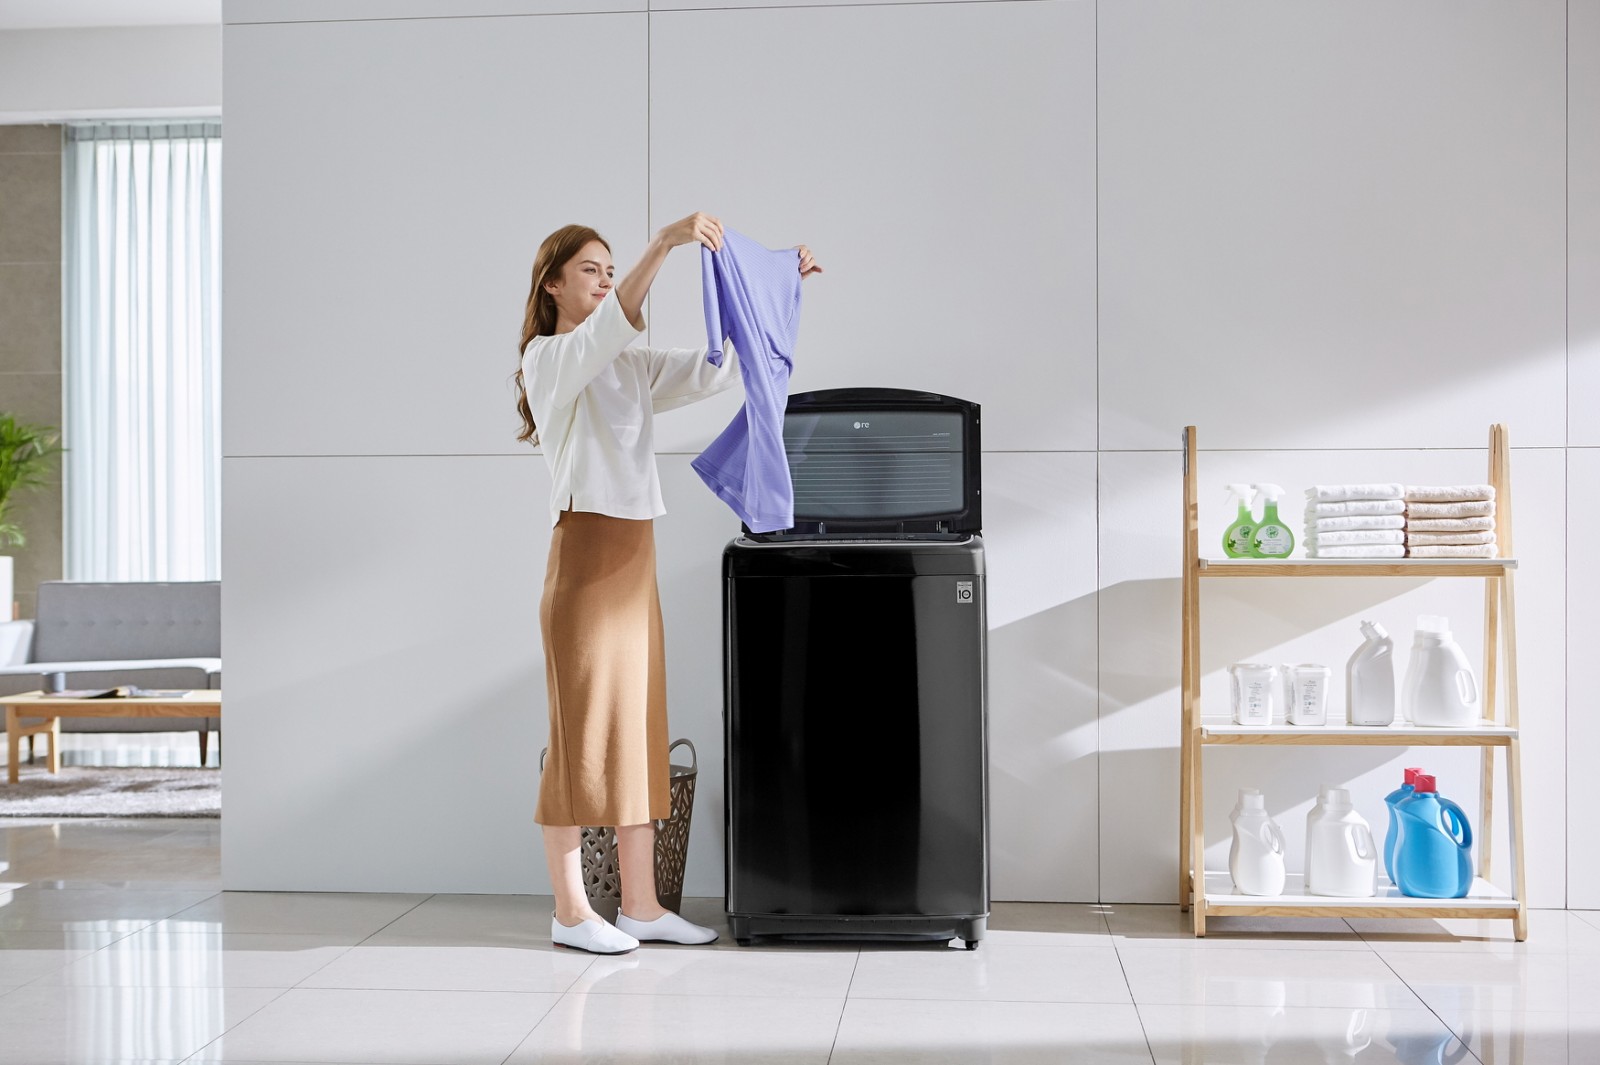 LG ra mắt máy giặt lồng đứng hơi nước DD mang tới trải nghiệm giặt giũ hoàn hảo